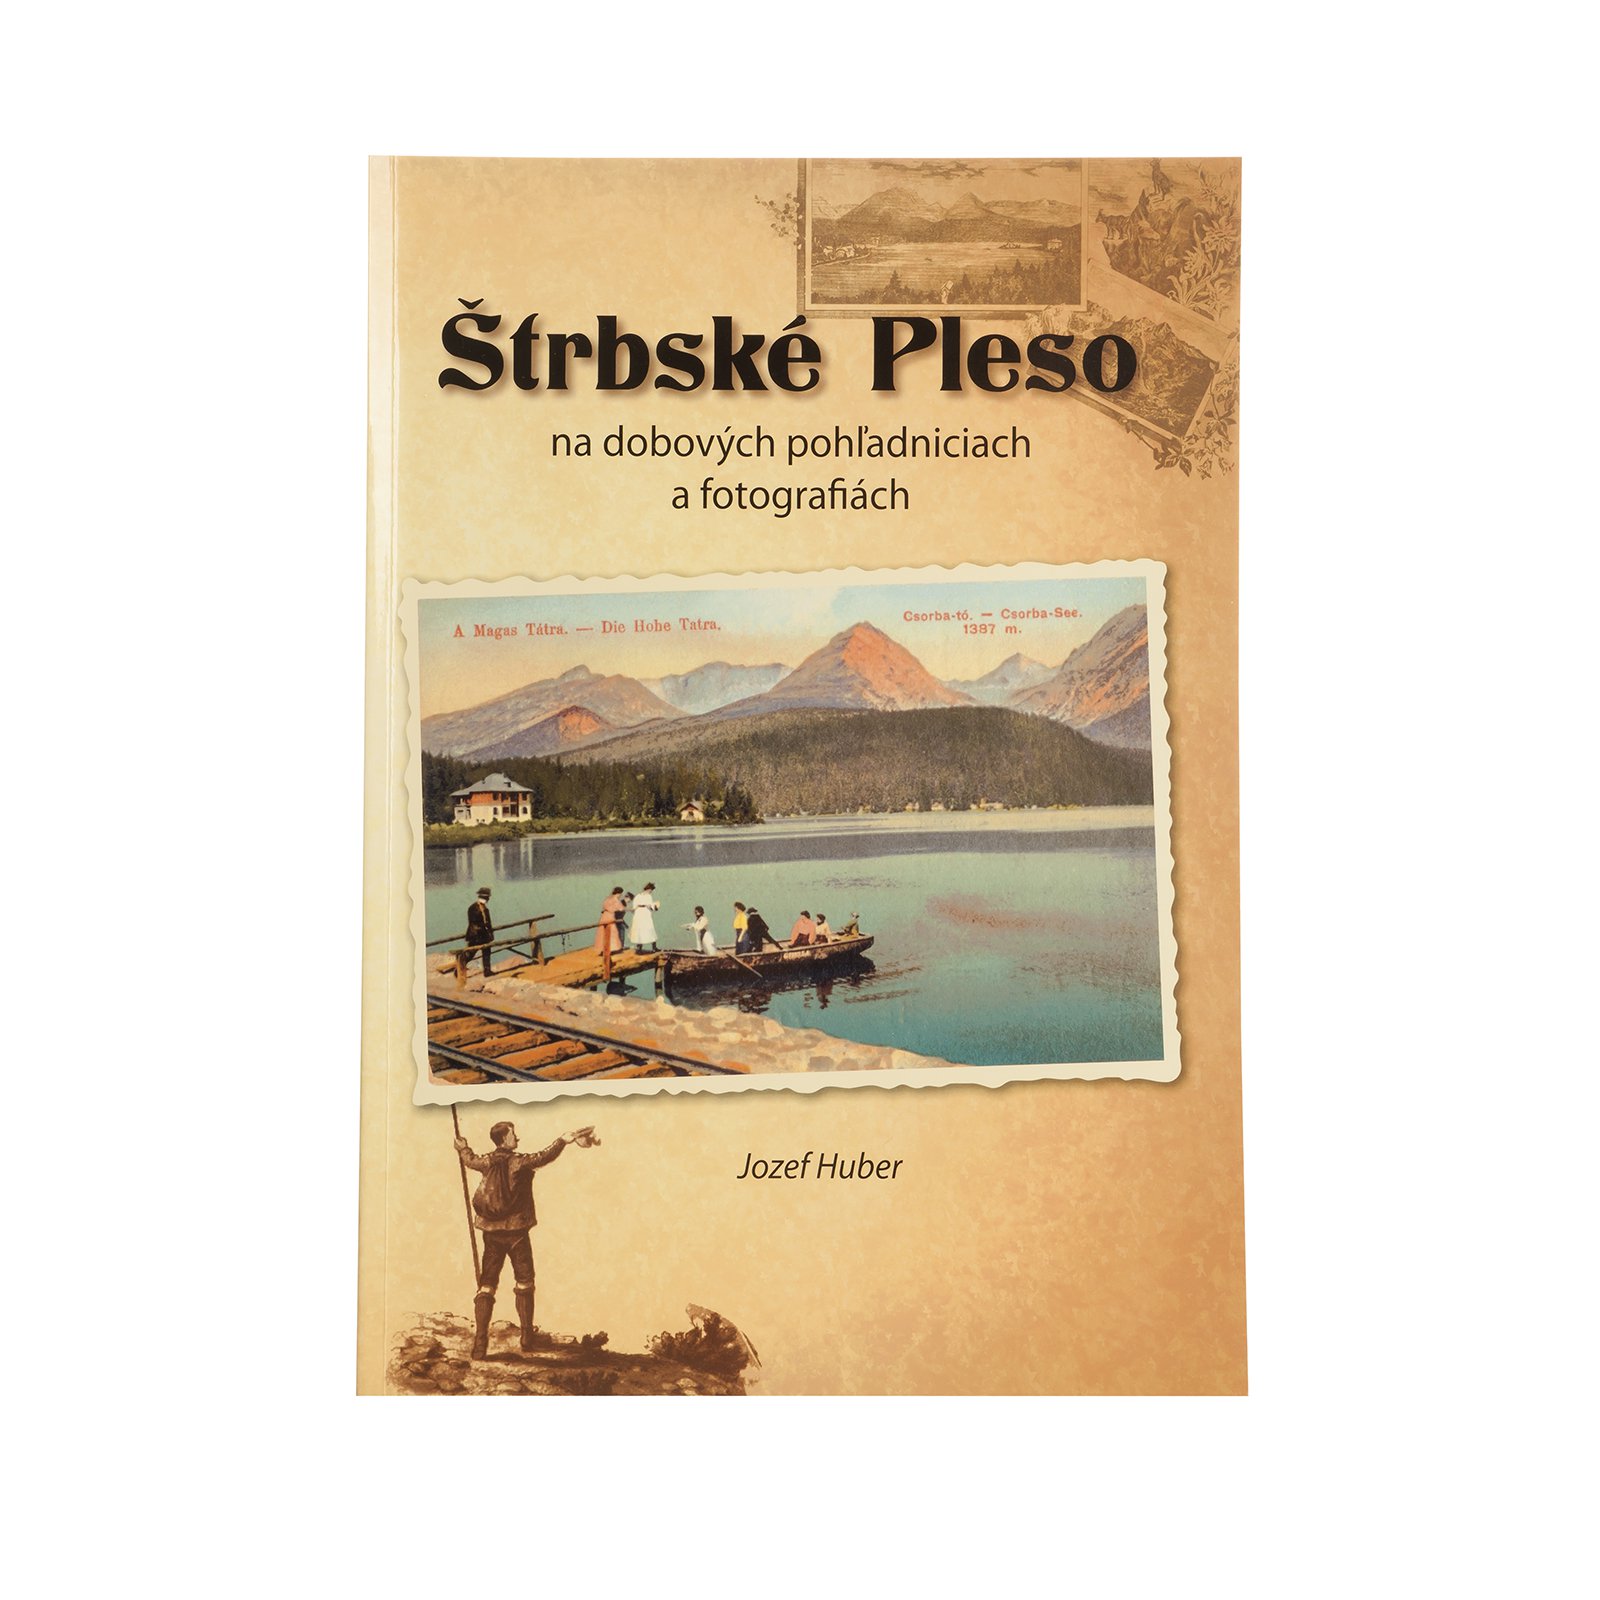 Štrbské Pleso on Period Postcards and Photographs (Štrbské Pleso na dobových pohľadniciach a fotografiách)